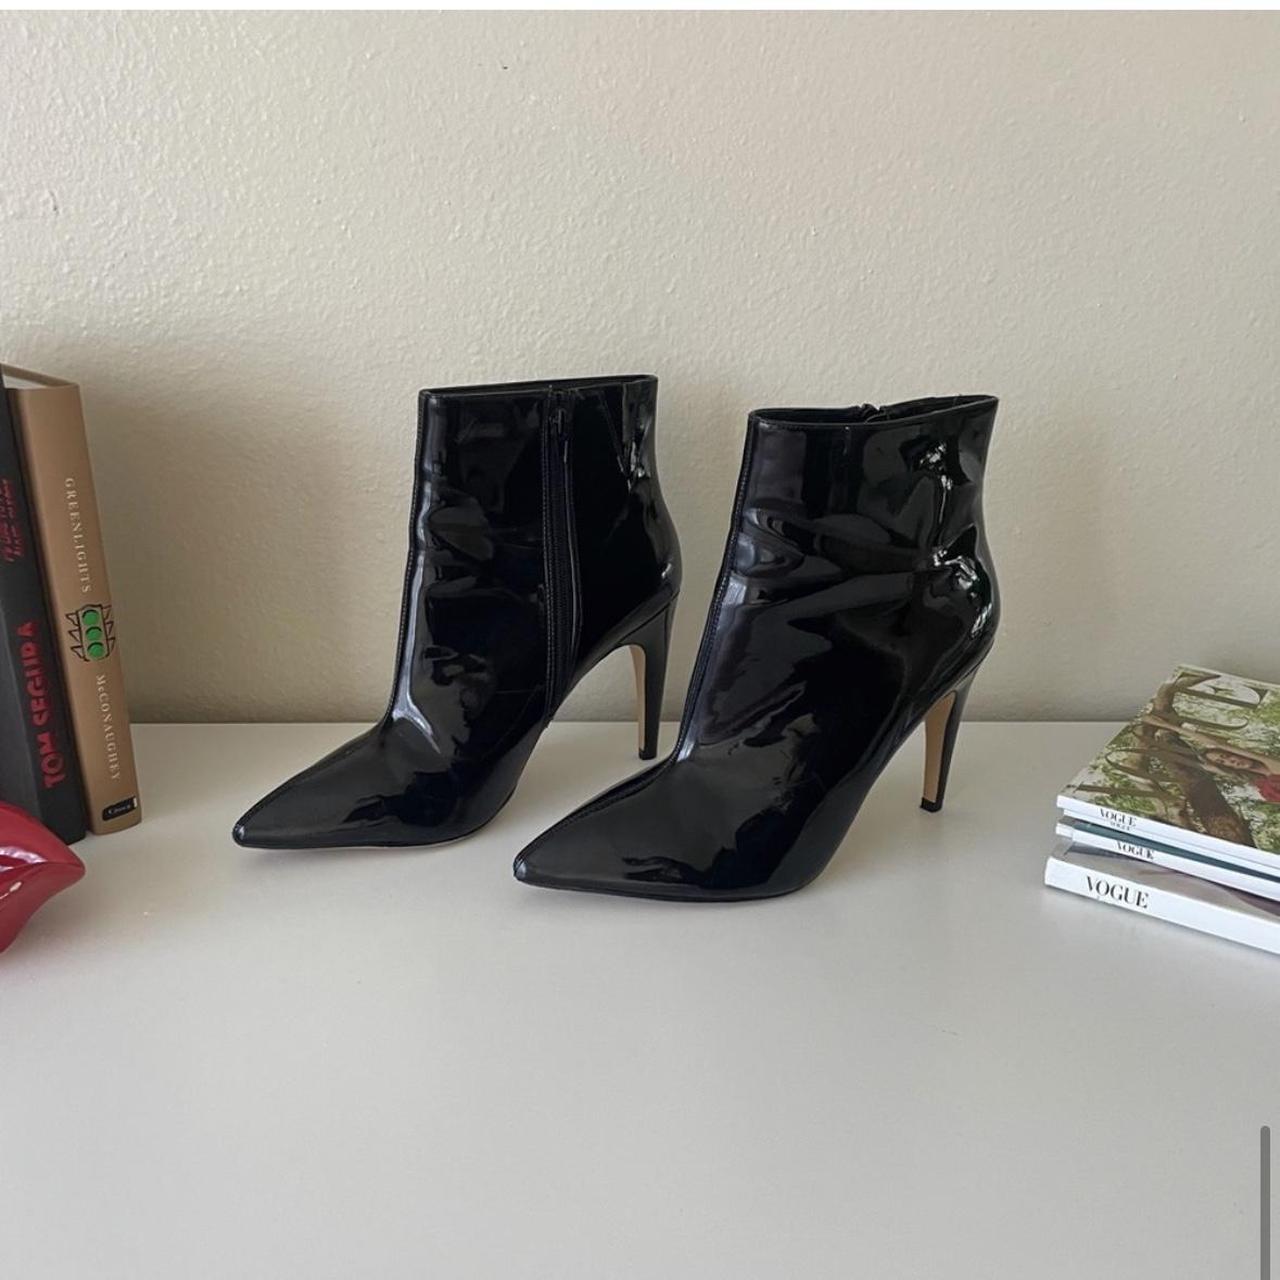 Express Women's Black Boots | Depop